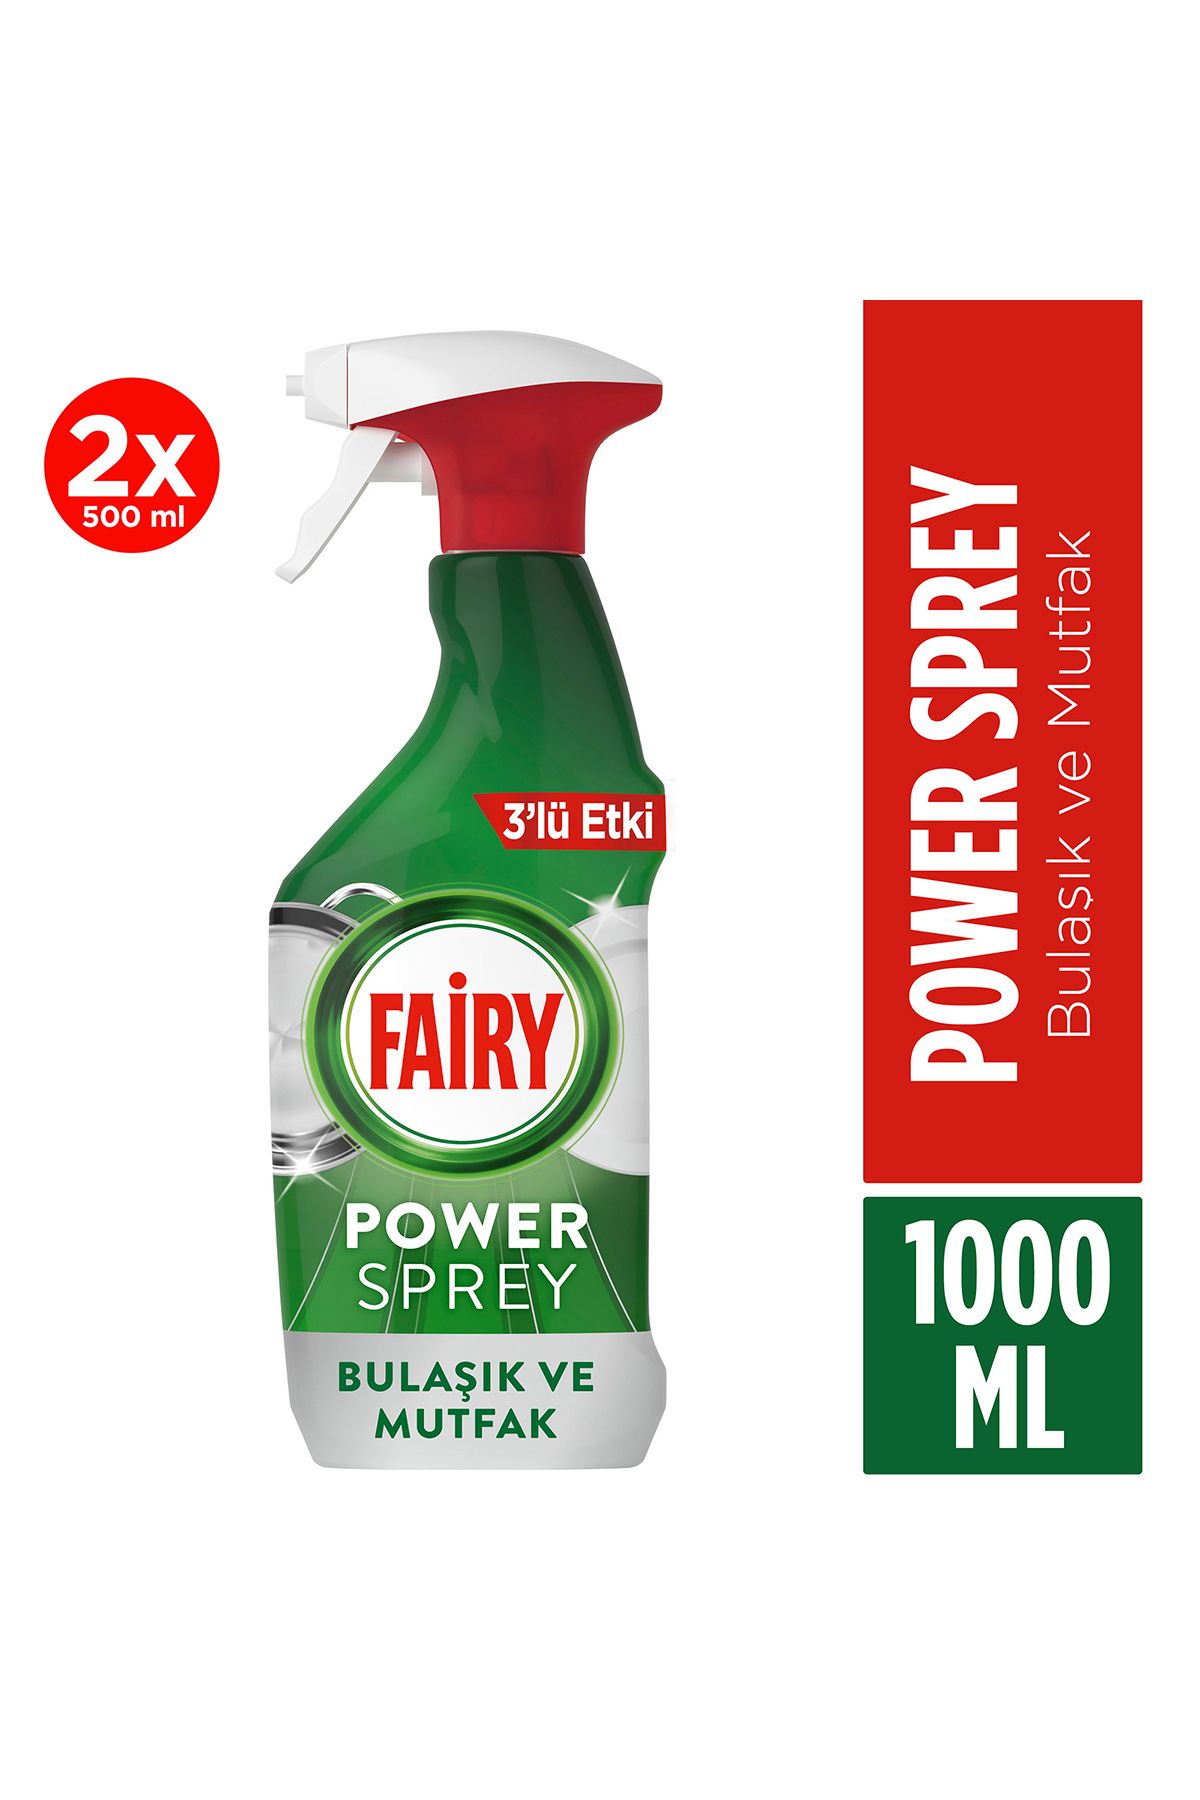 Fairy Power Sprey 3’ü 1 Arada Bulaşık Ve Mutfak 1000 ml (2x500ml)